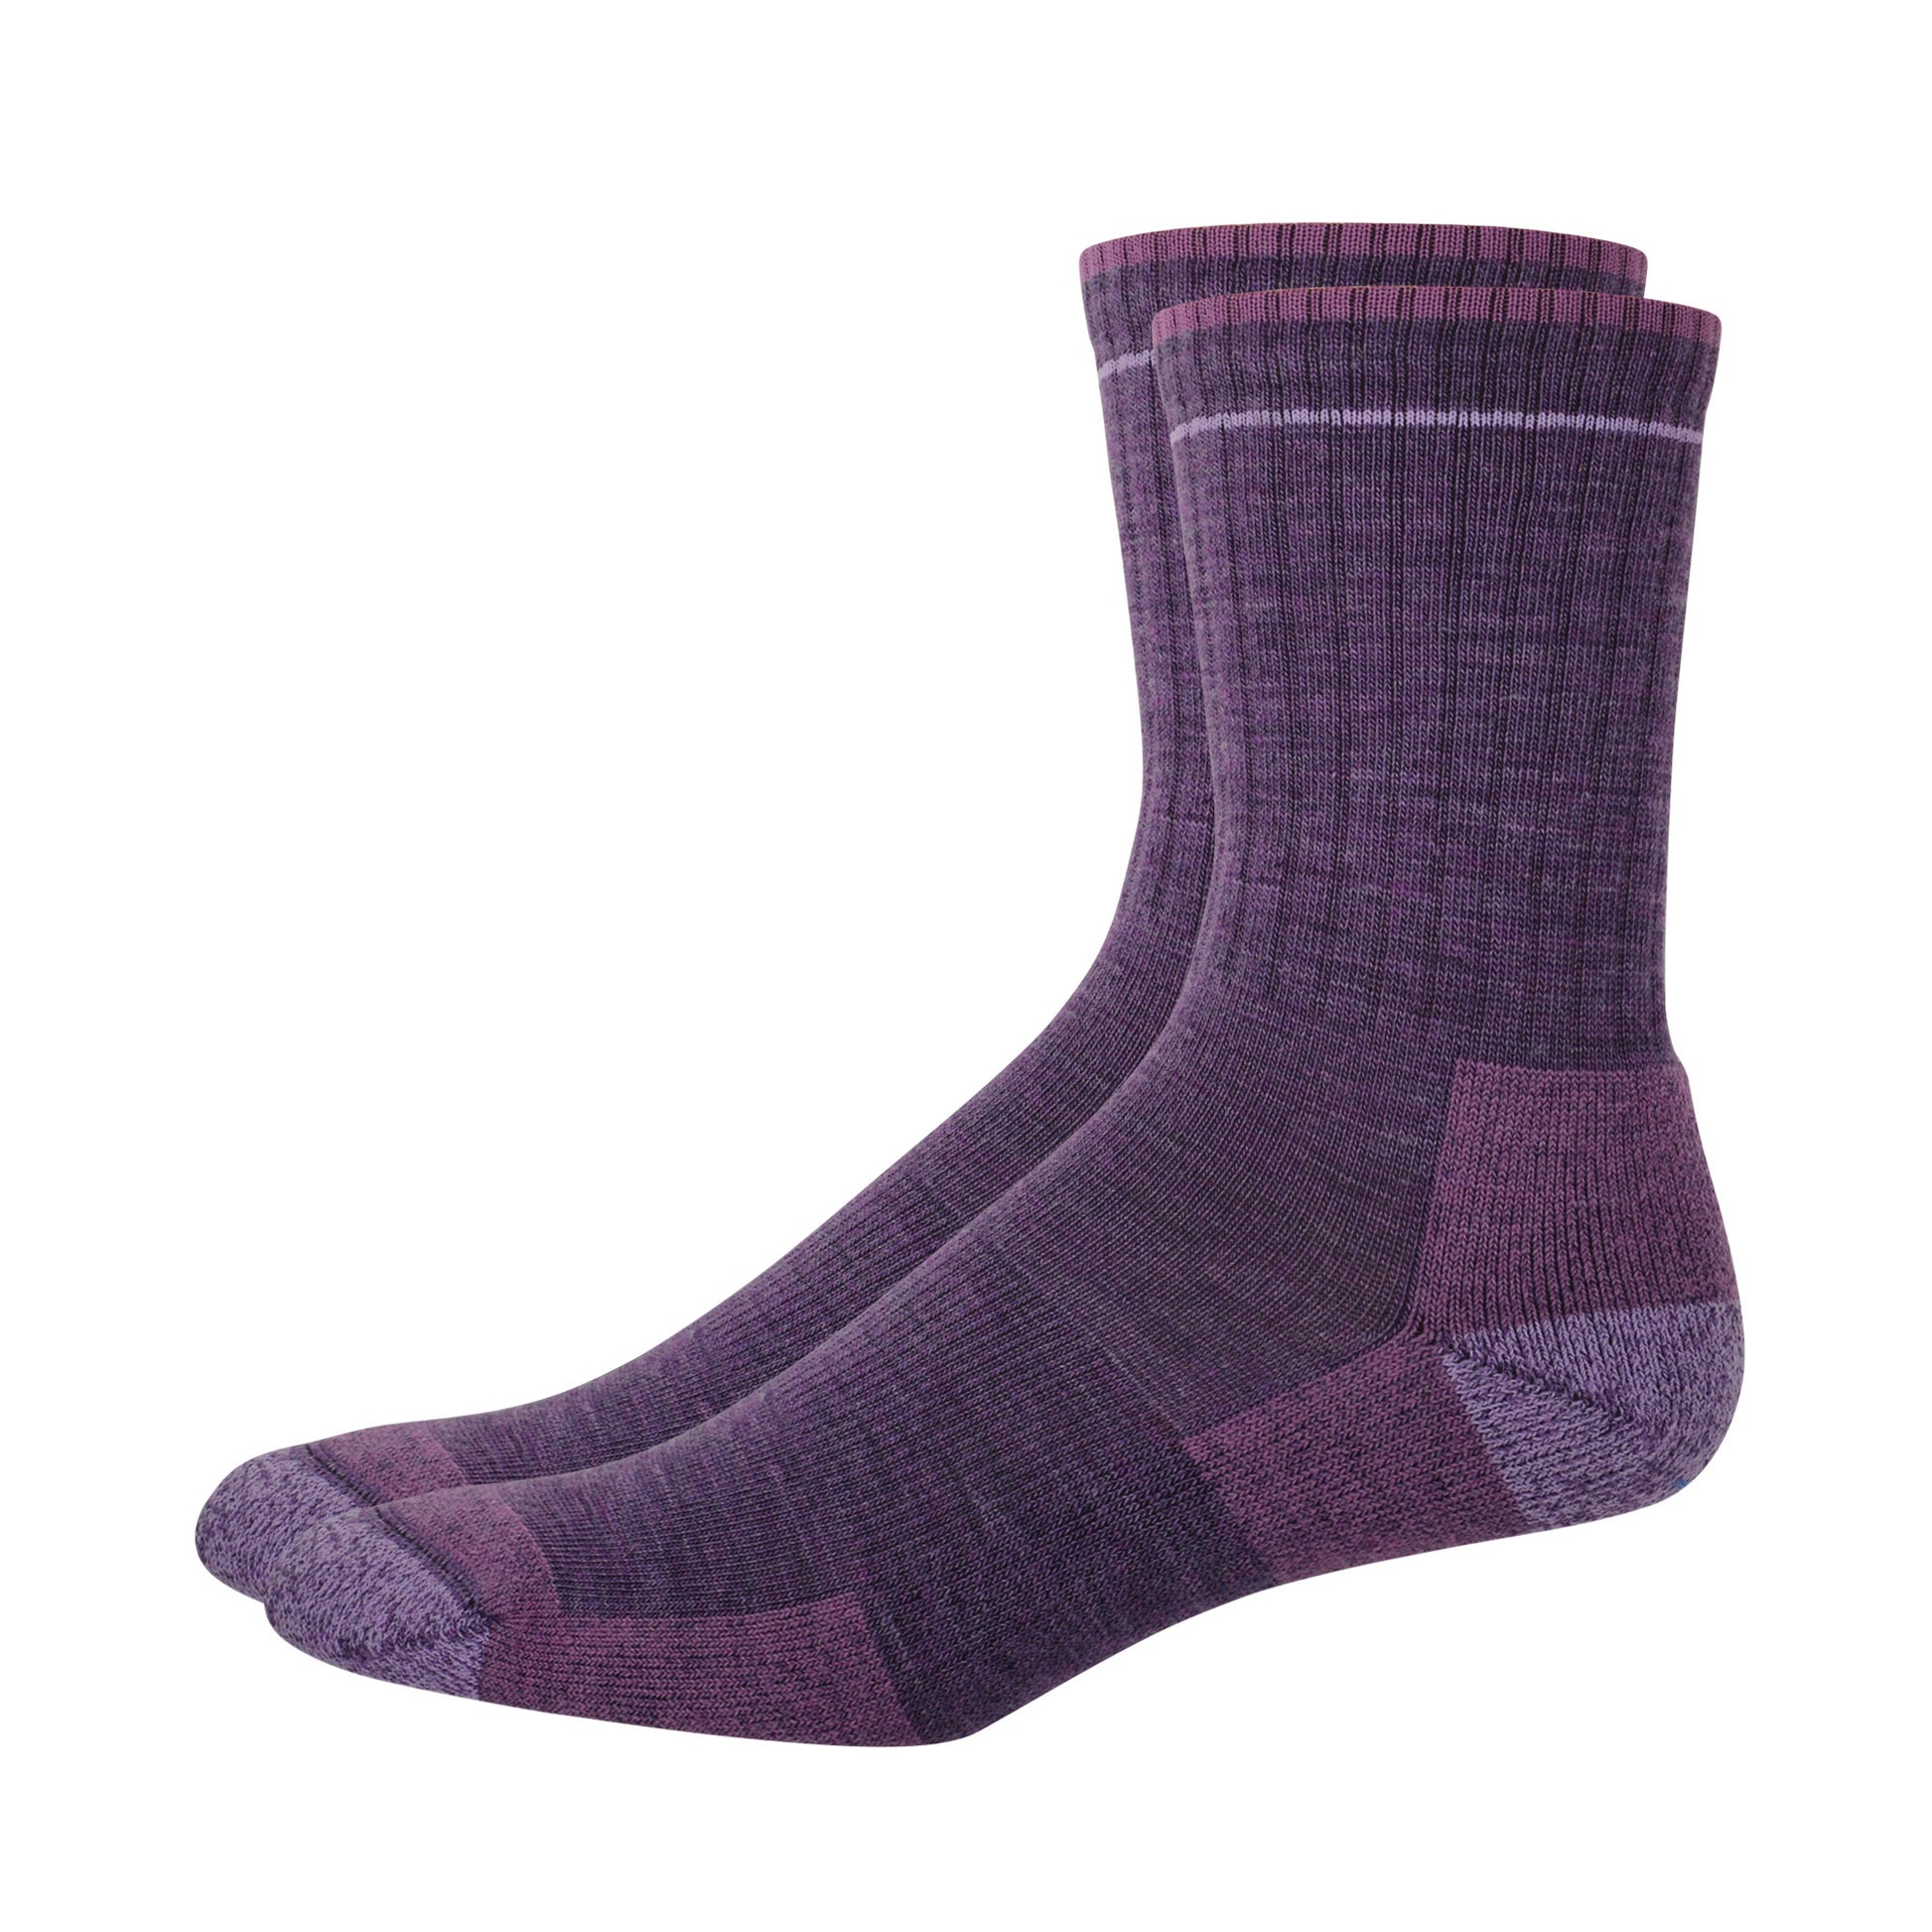 Pair of purple merino wool casual socks. 